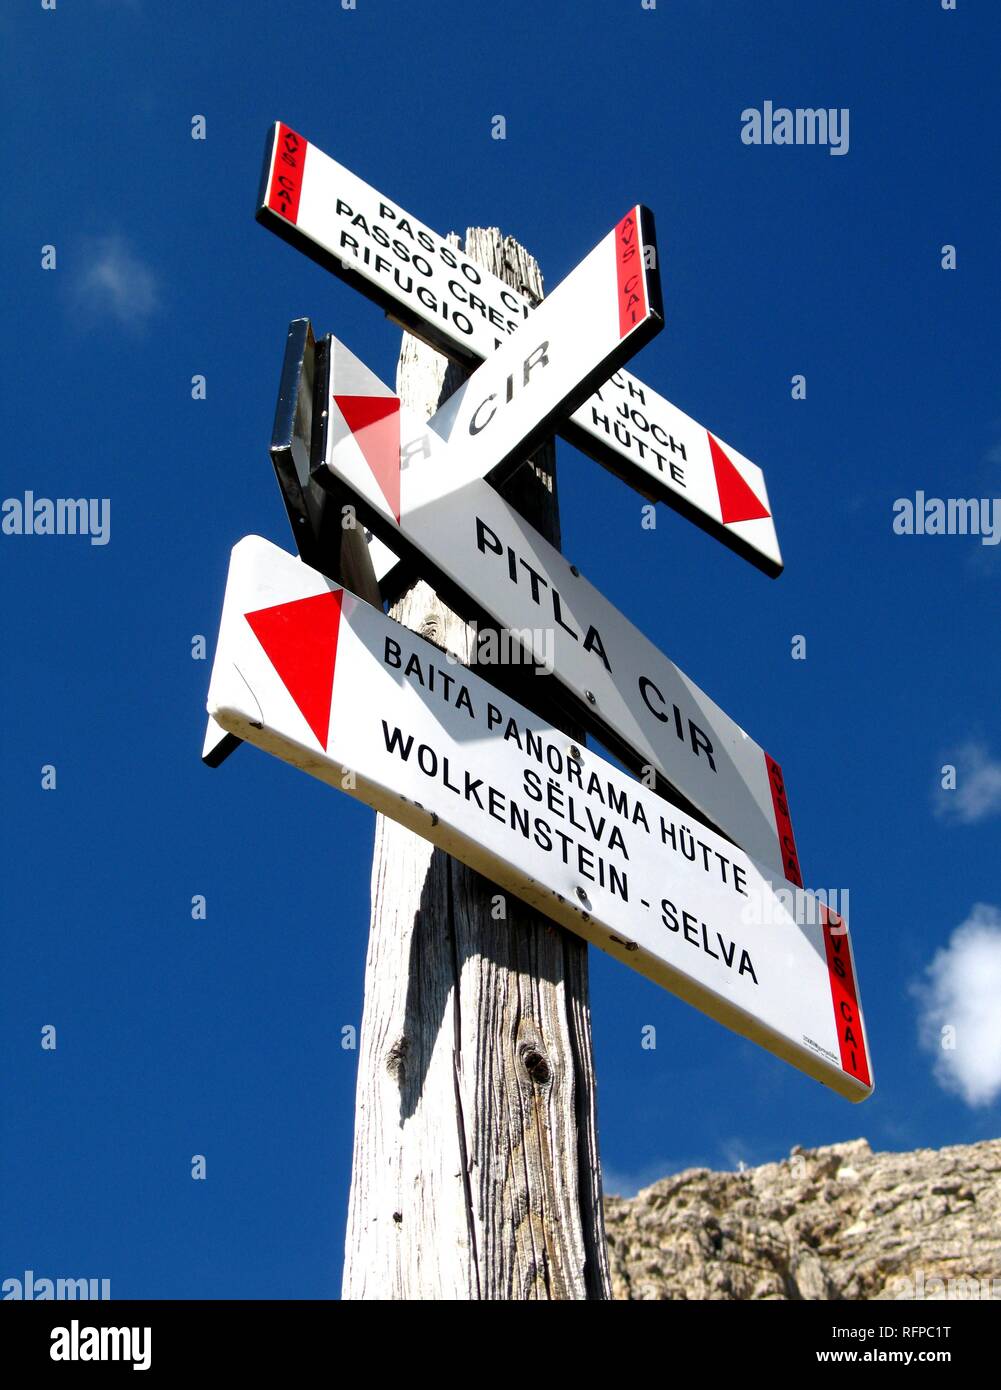 Panneau pour randonneur vu dans le Tyrol du Sud, Italie Banque D'Images